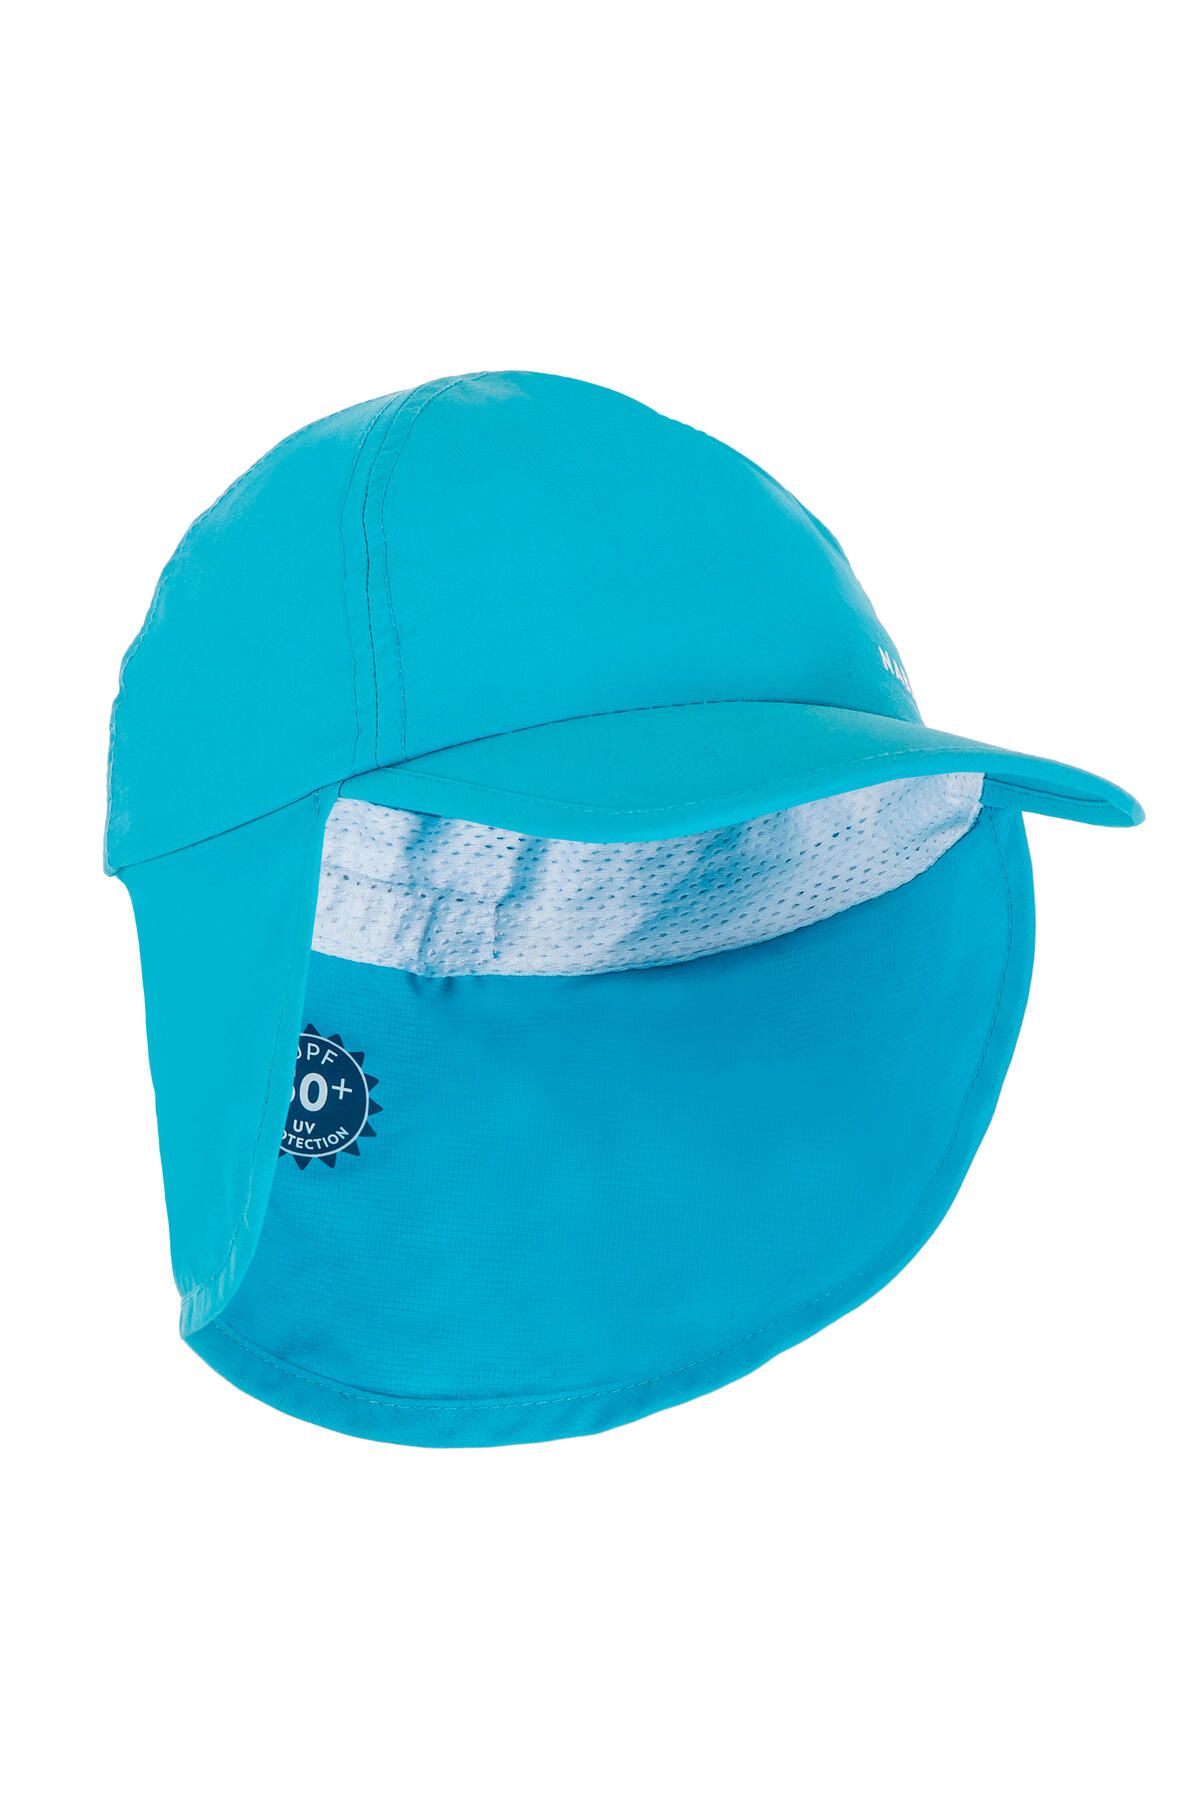 Decathlon Bebek Uv Korumalı Şapka - Mavi